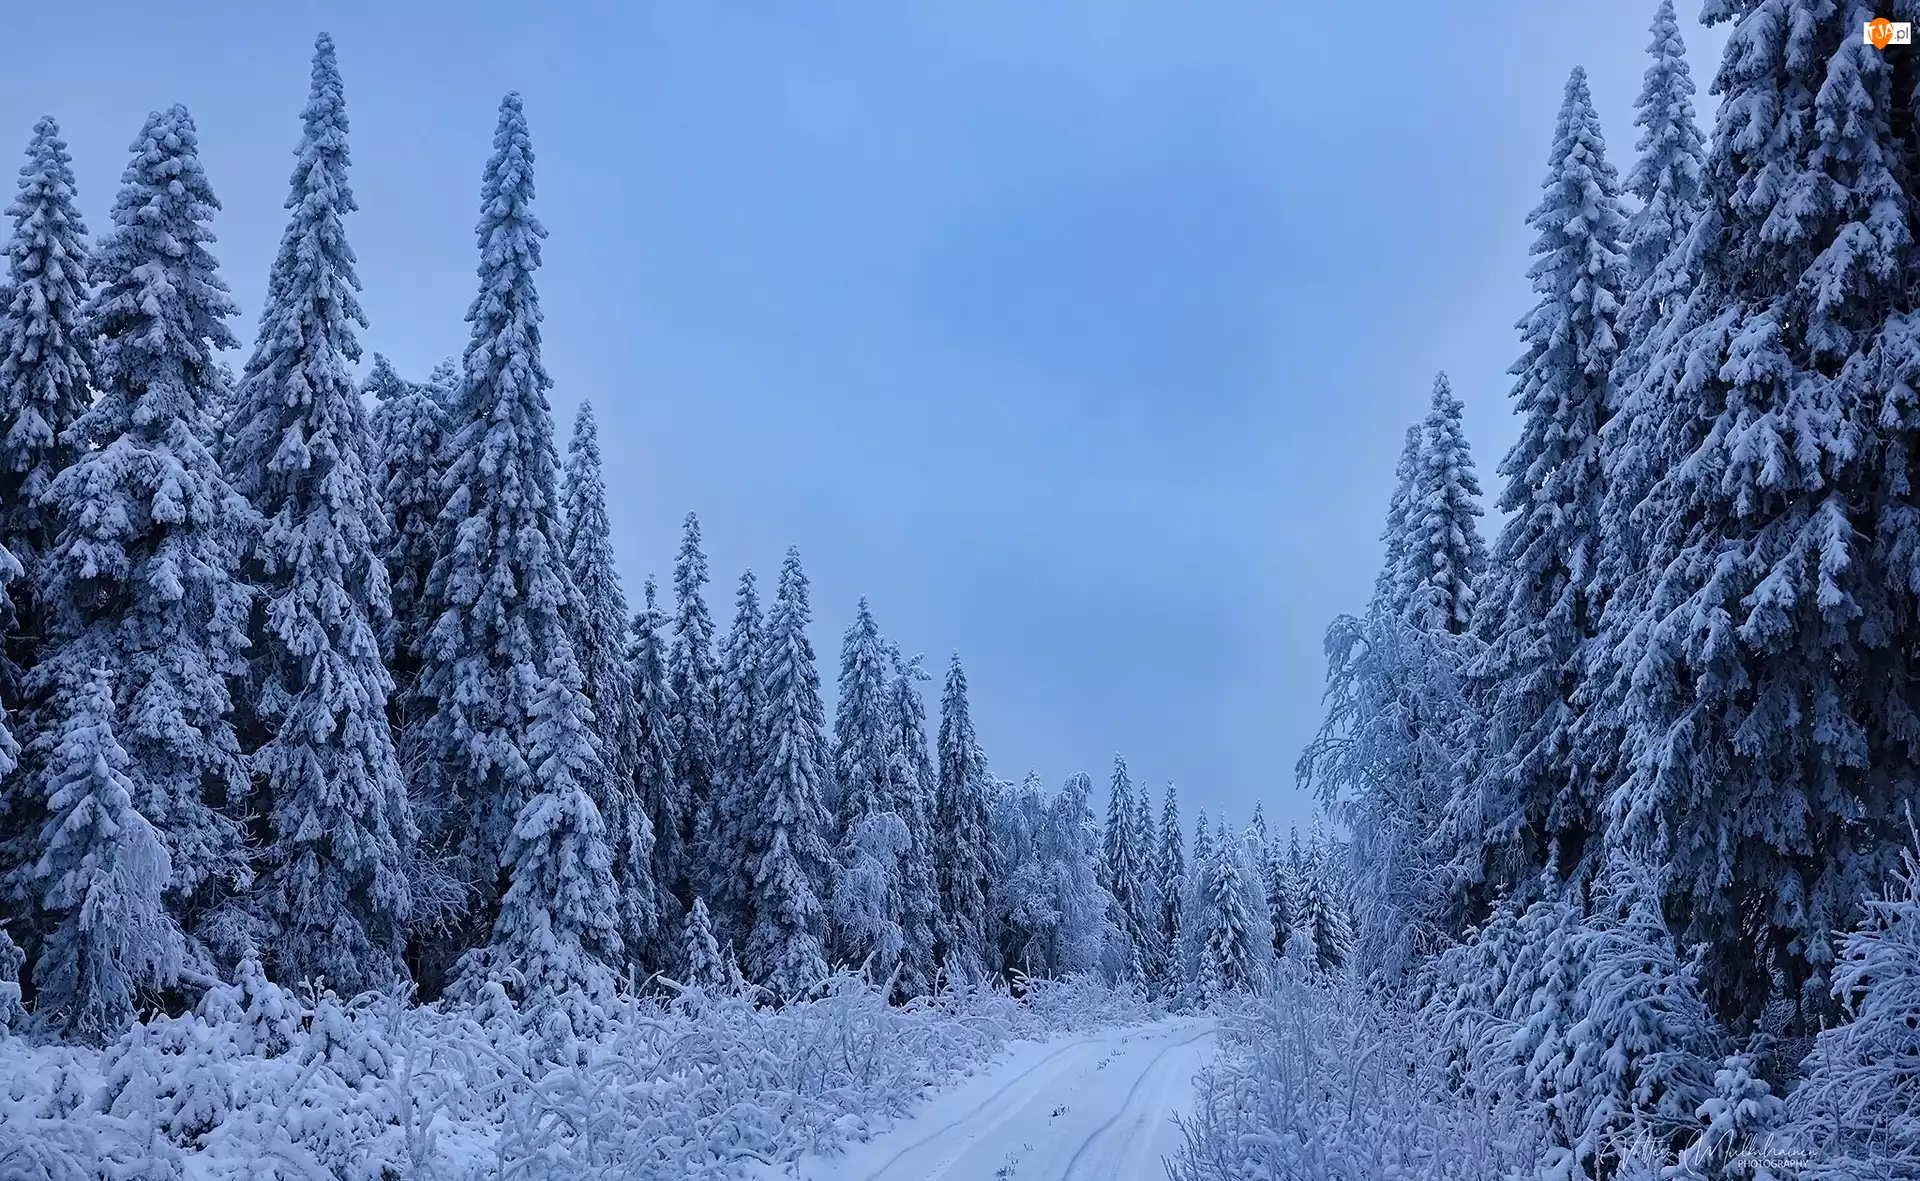 Droga, Drzewa, Śnieg, Zima, Las